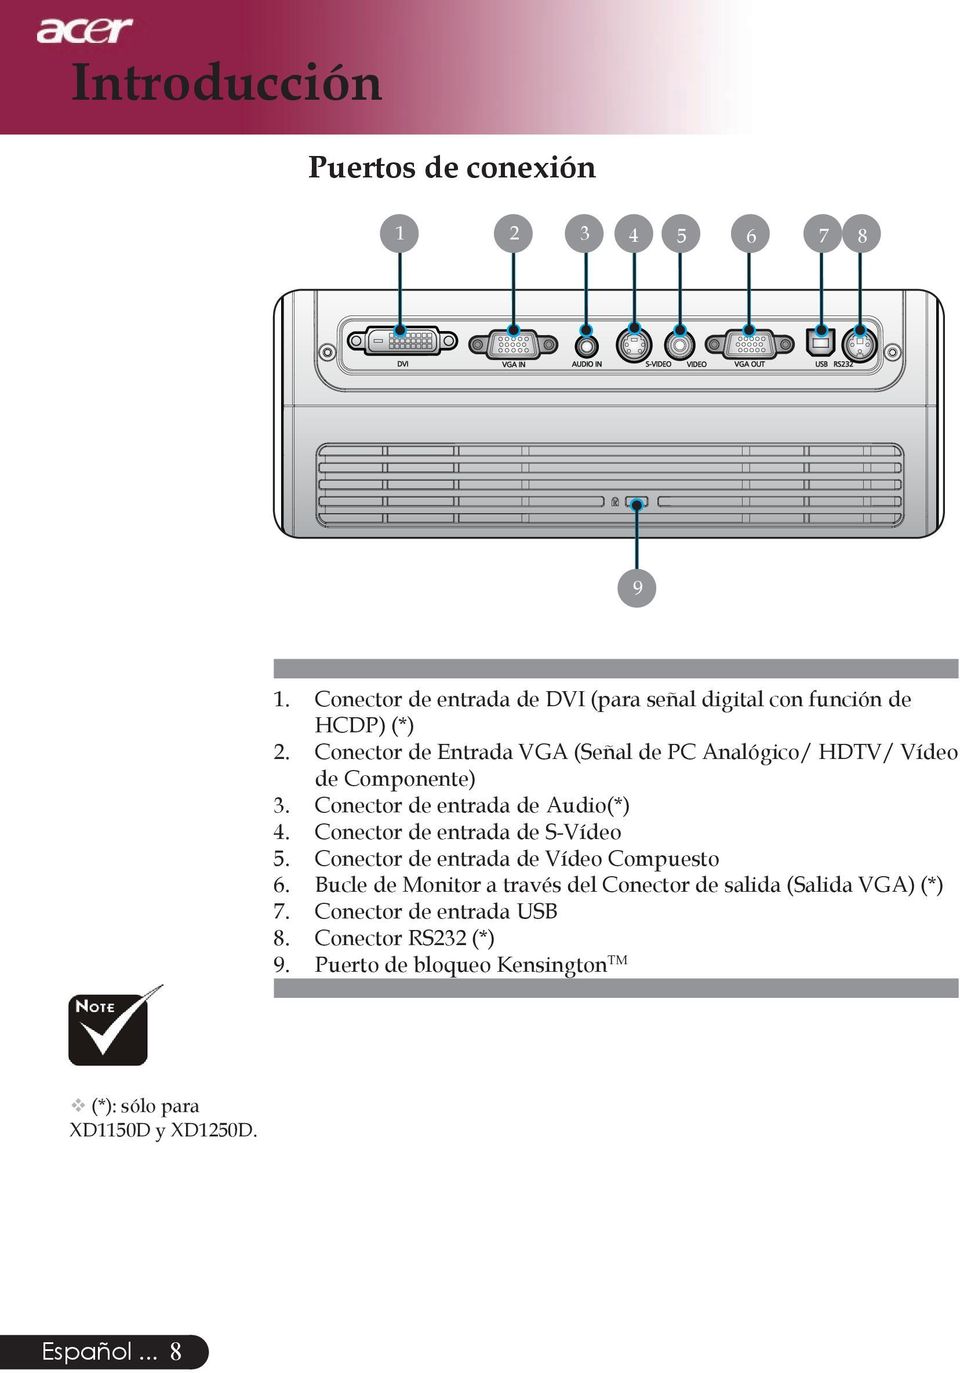 Conector de Entrada VGA (Señal de PC Analógico/ HDTV/ Vídeo de Componente) 3. Conector de entrada de Audio(*) 4.